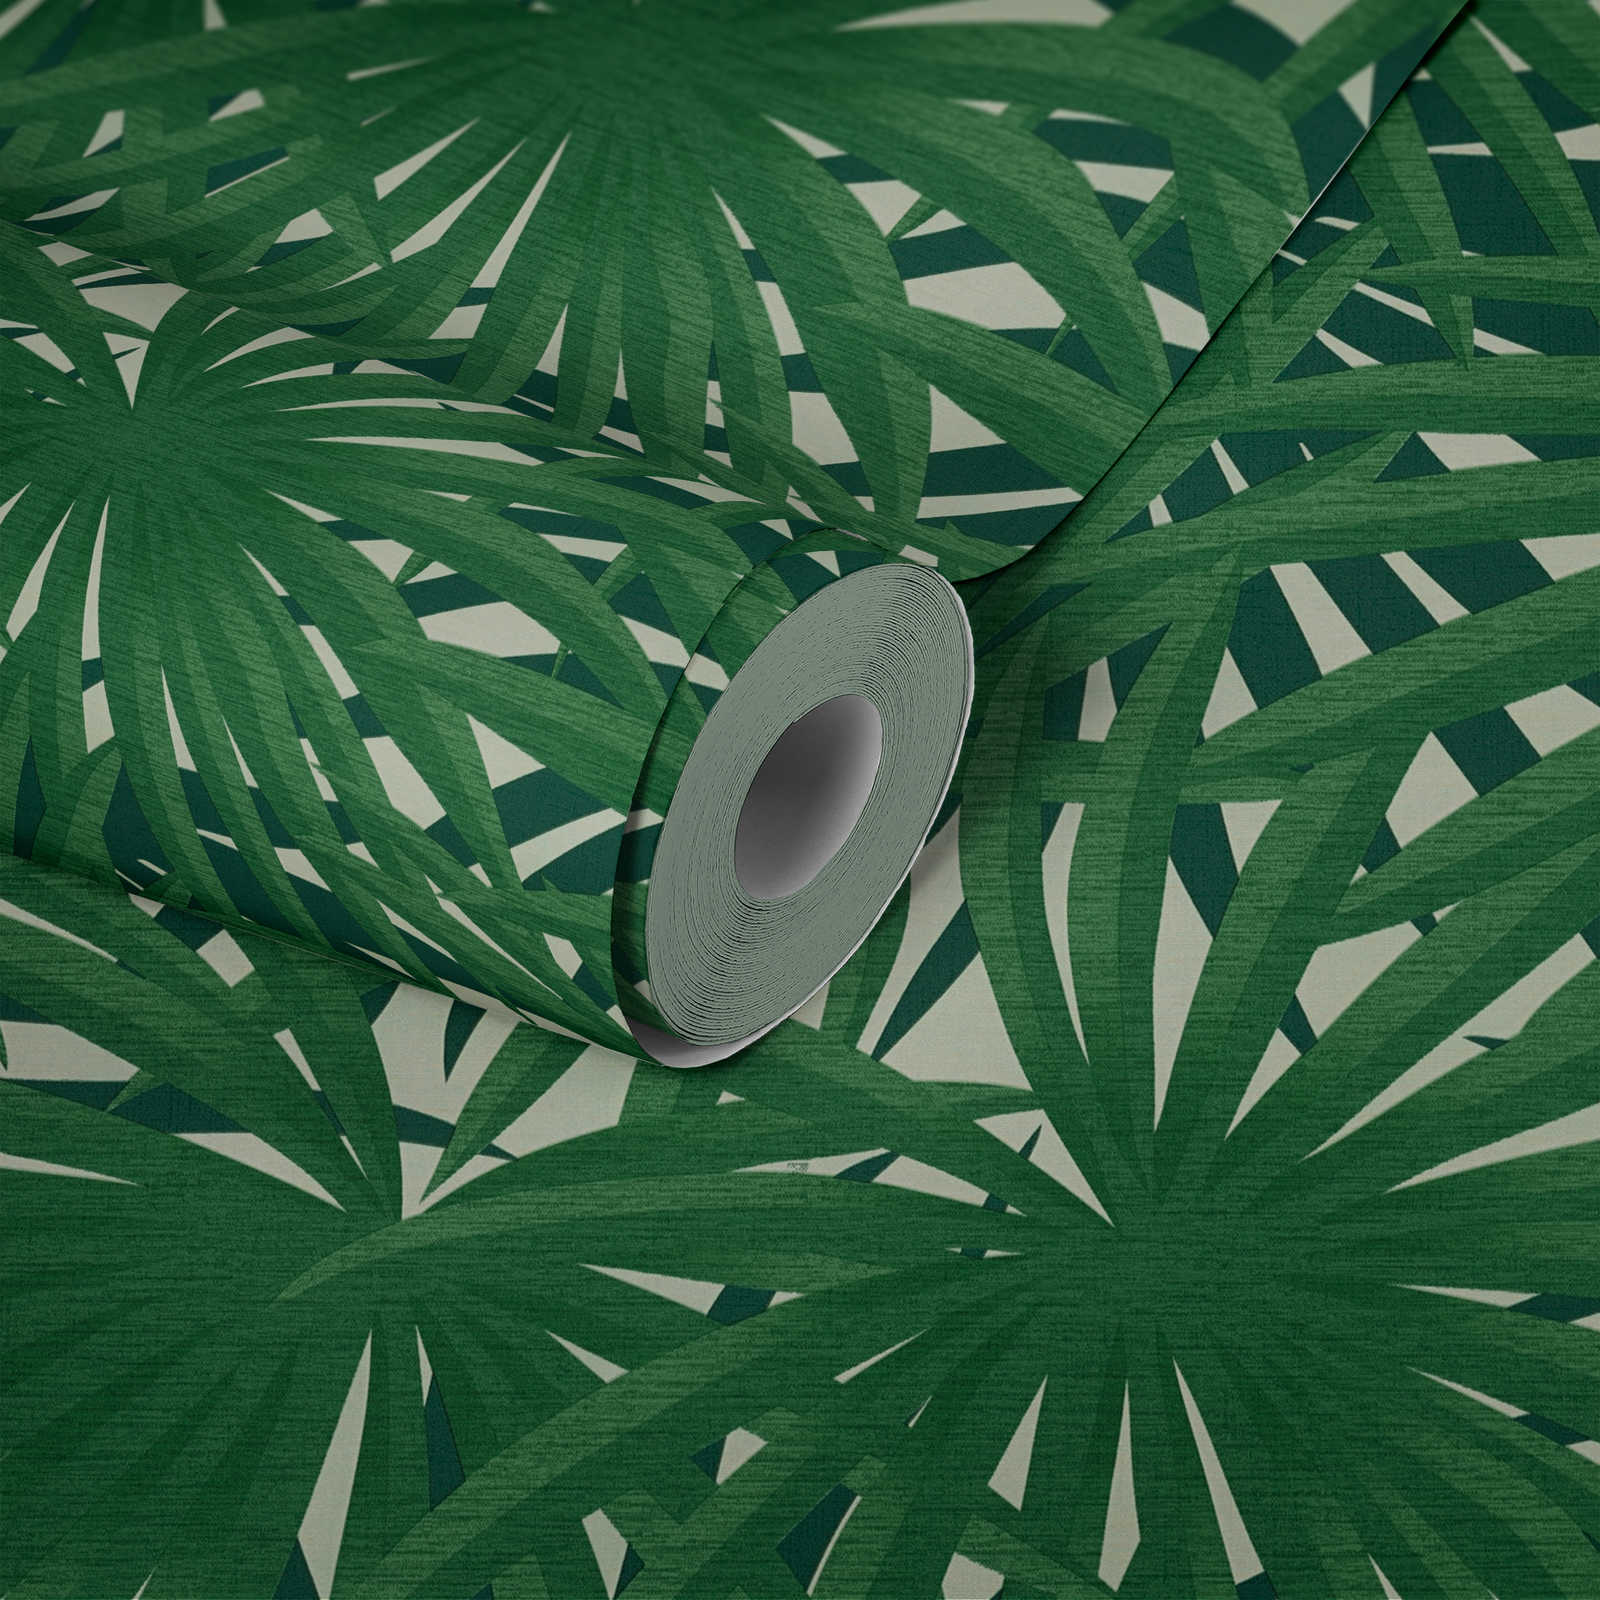             Papier peint tropical au design jungle & à l'éclat métallique - vert, métallique, blanc
        